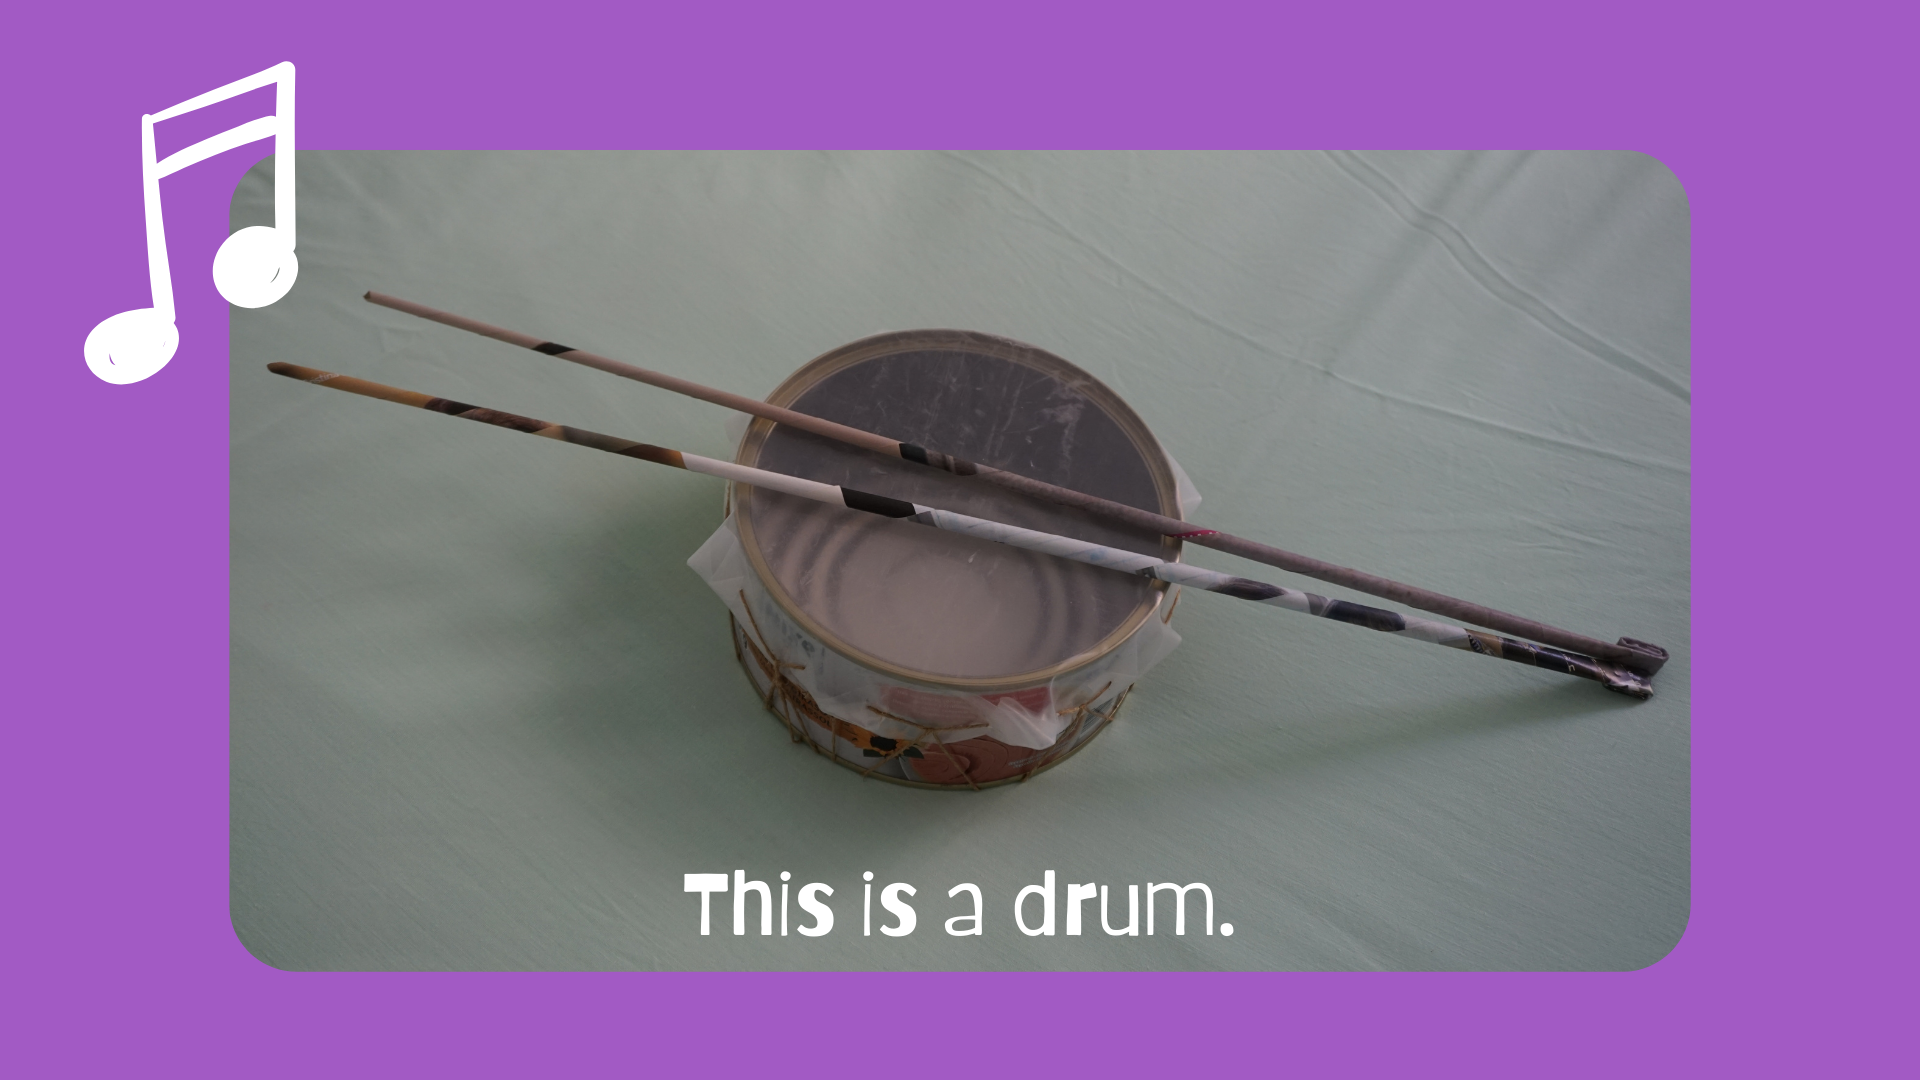 En la imagen puedes ver un tambor reciclado hecho con una lata grande de atún, cubierta con un trozo de plástico flexible atado con una cuerda